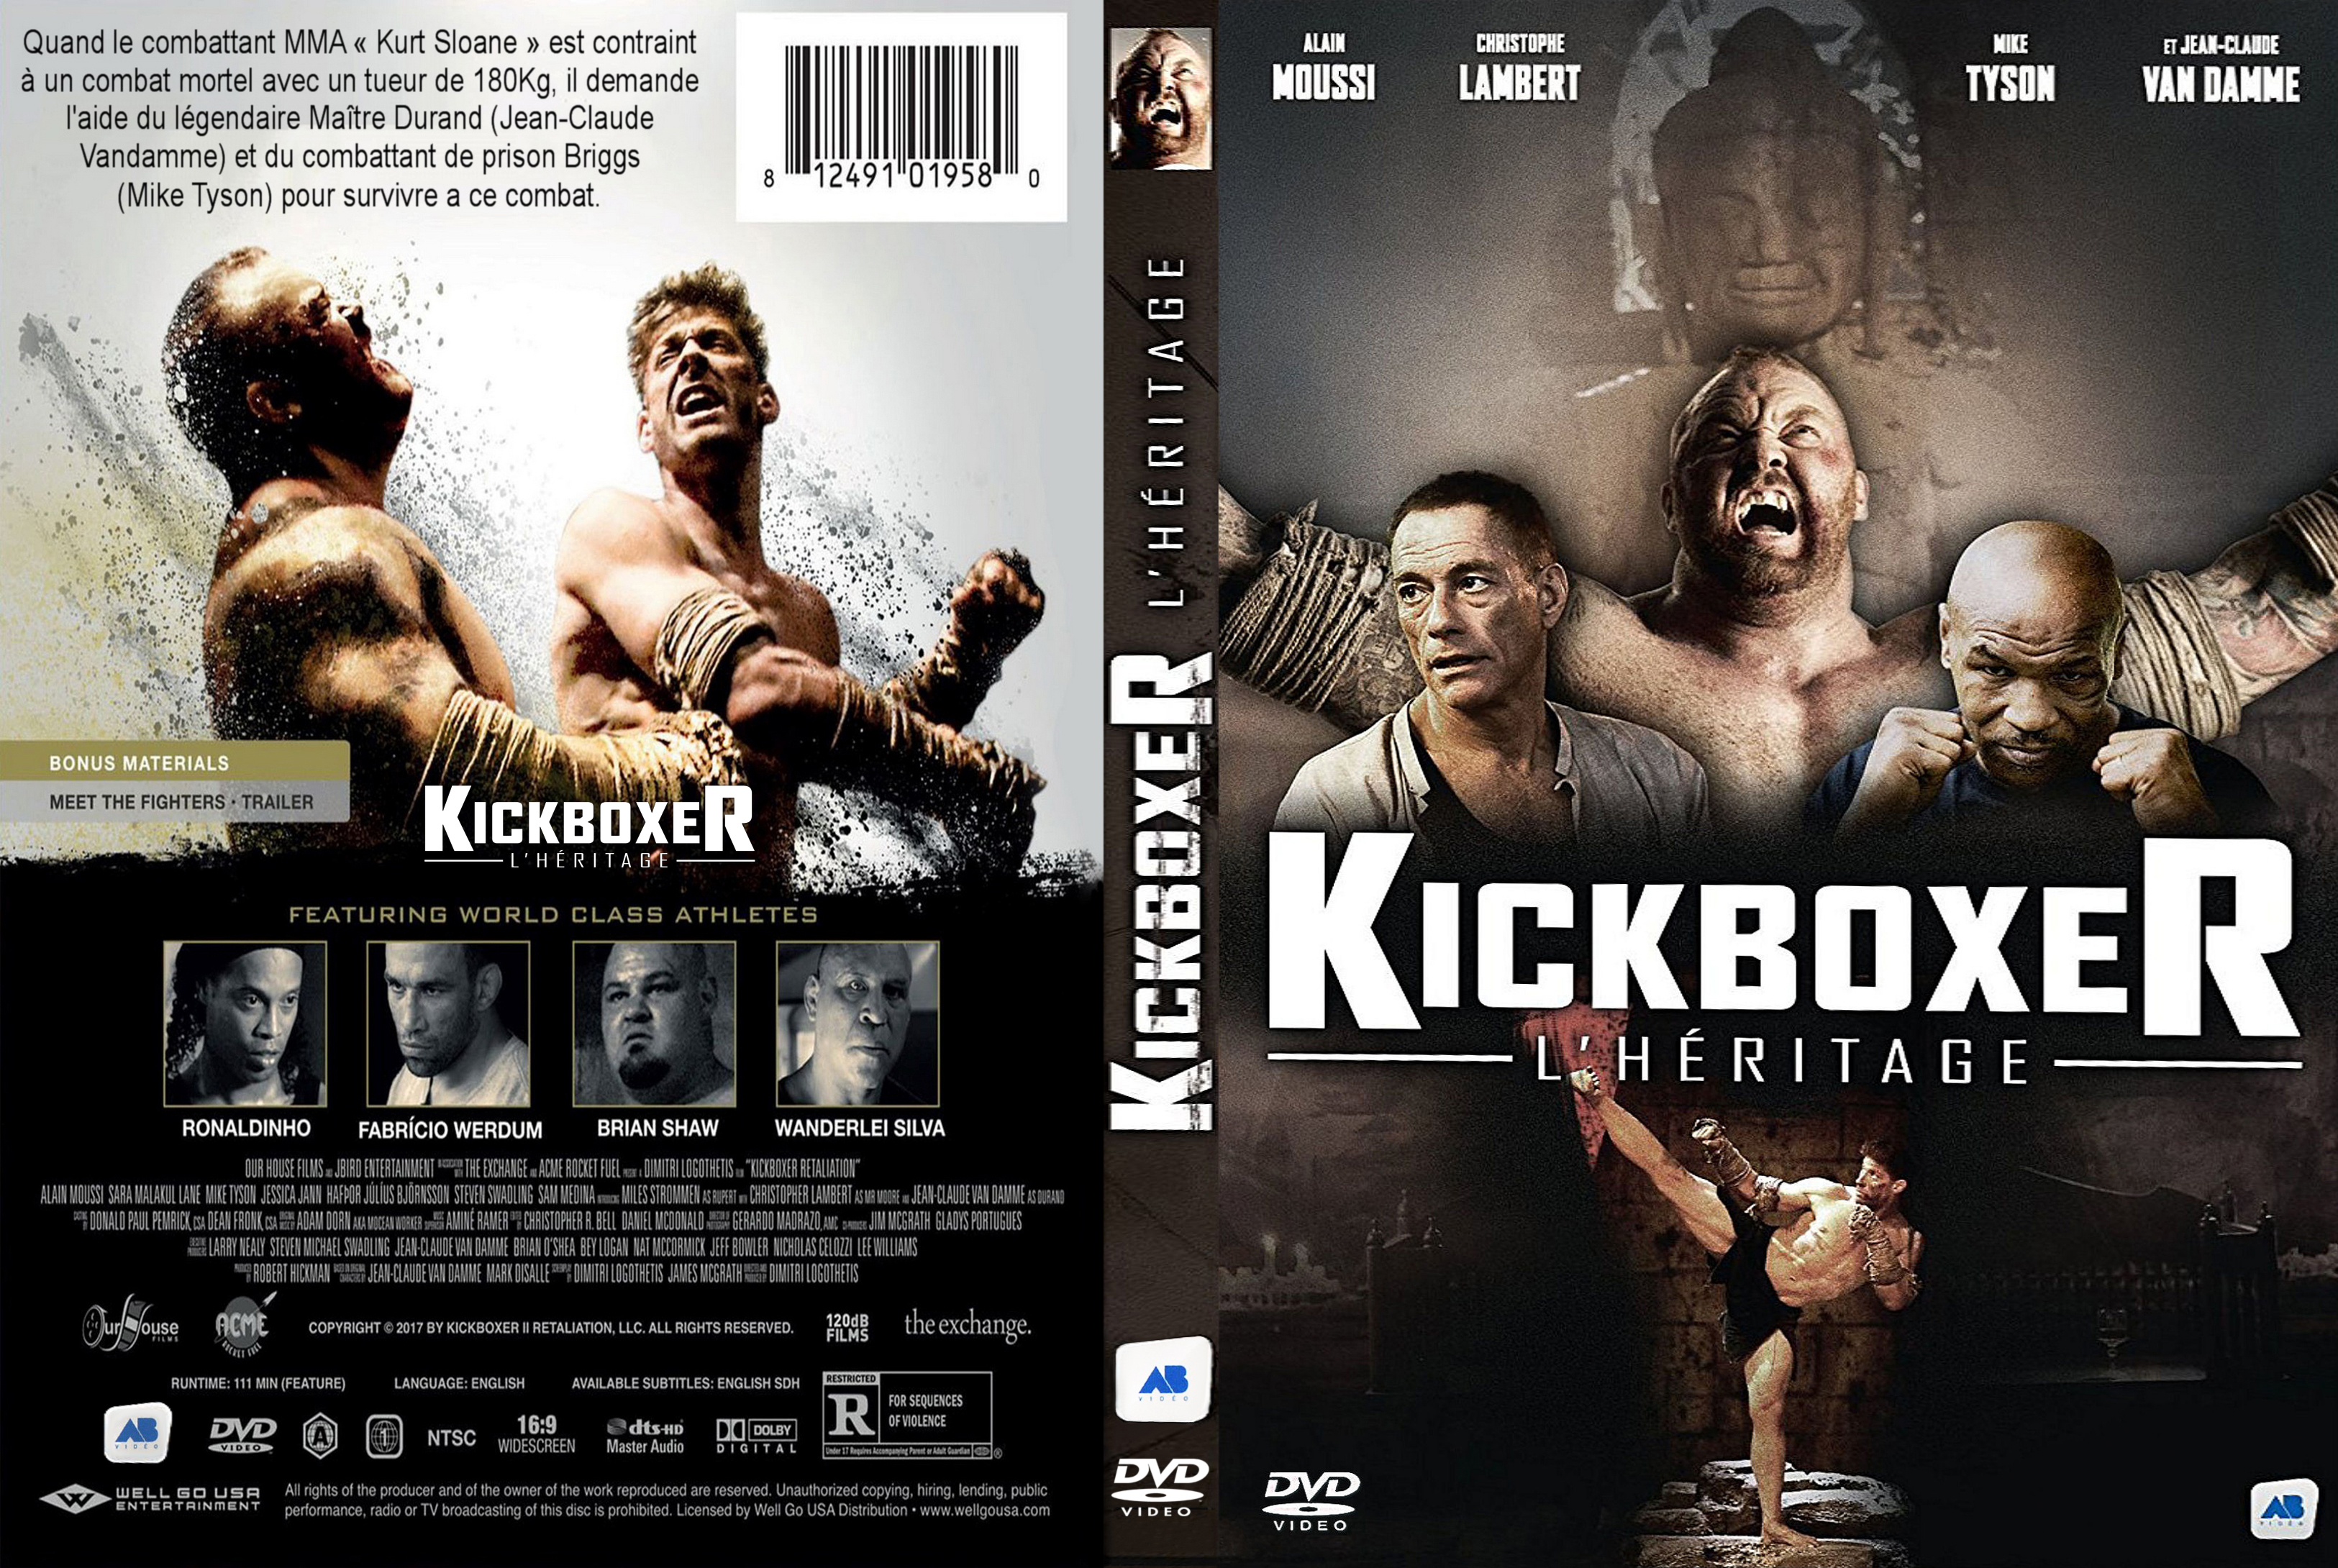 Jaquette DVD Kickboxer 7 - l